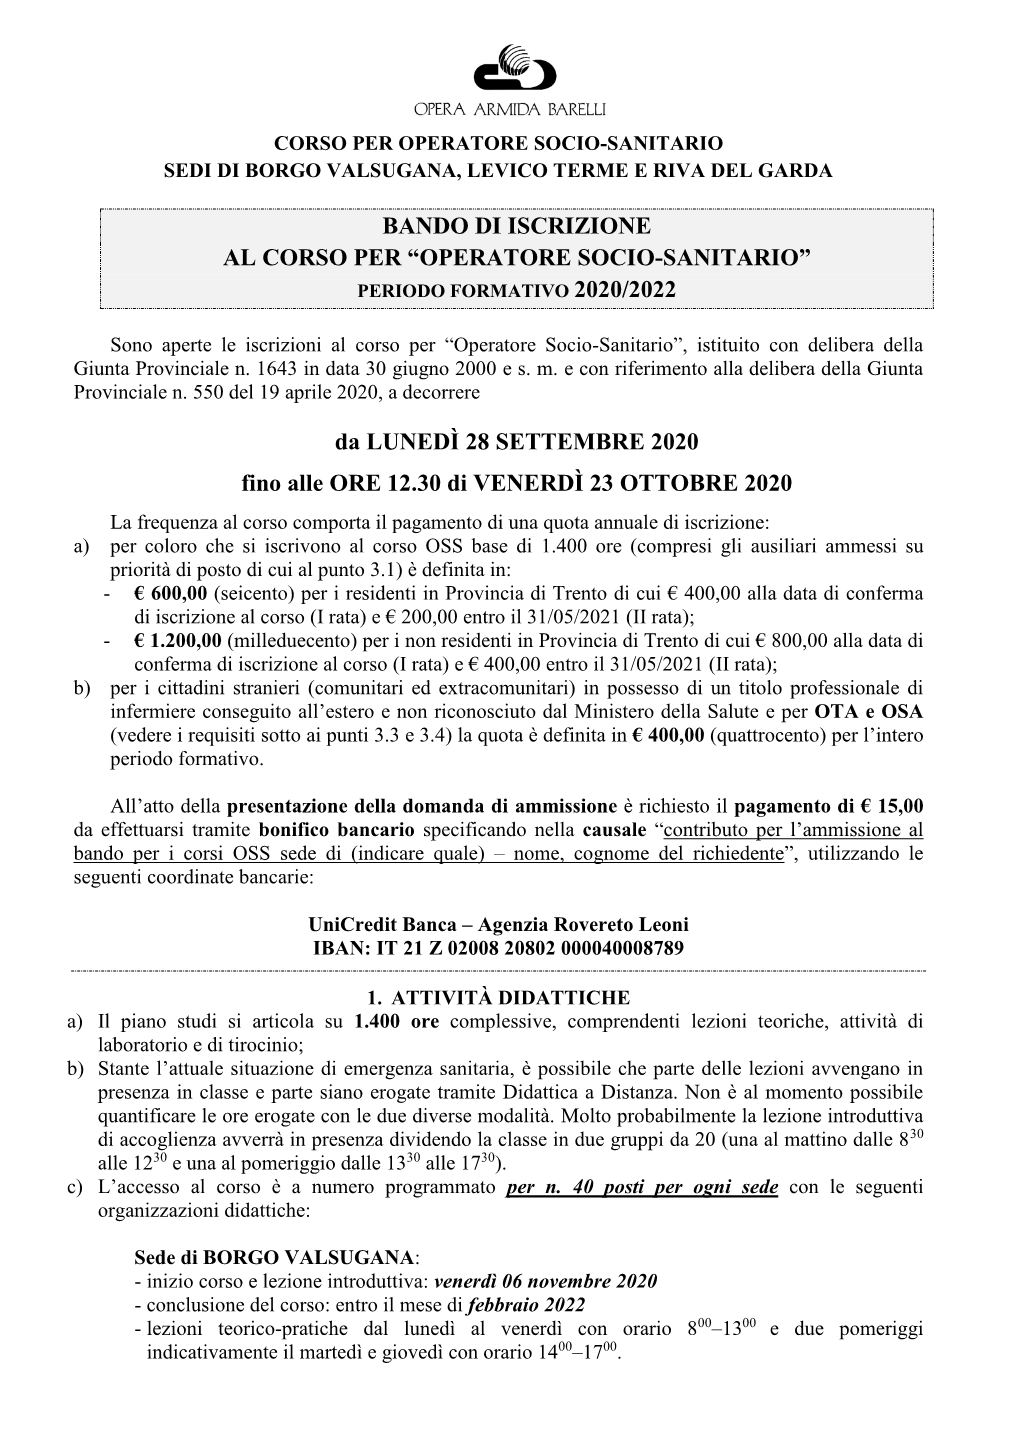 Bando Di Iscrizione Al Corso Per “Operatore Socio-Sanitario” Periodo Formativo 2020/2022